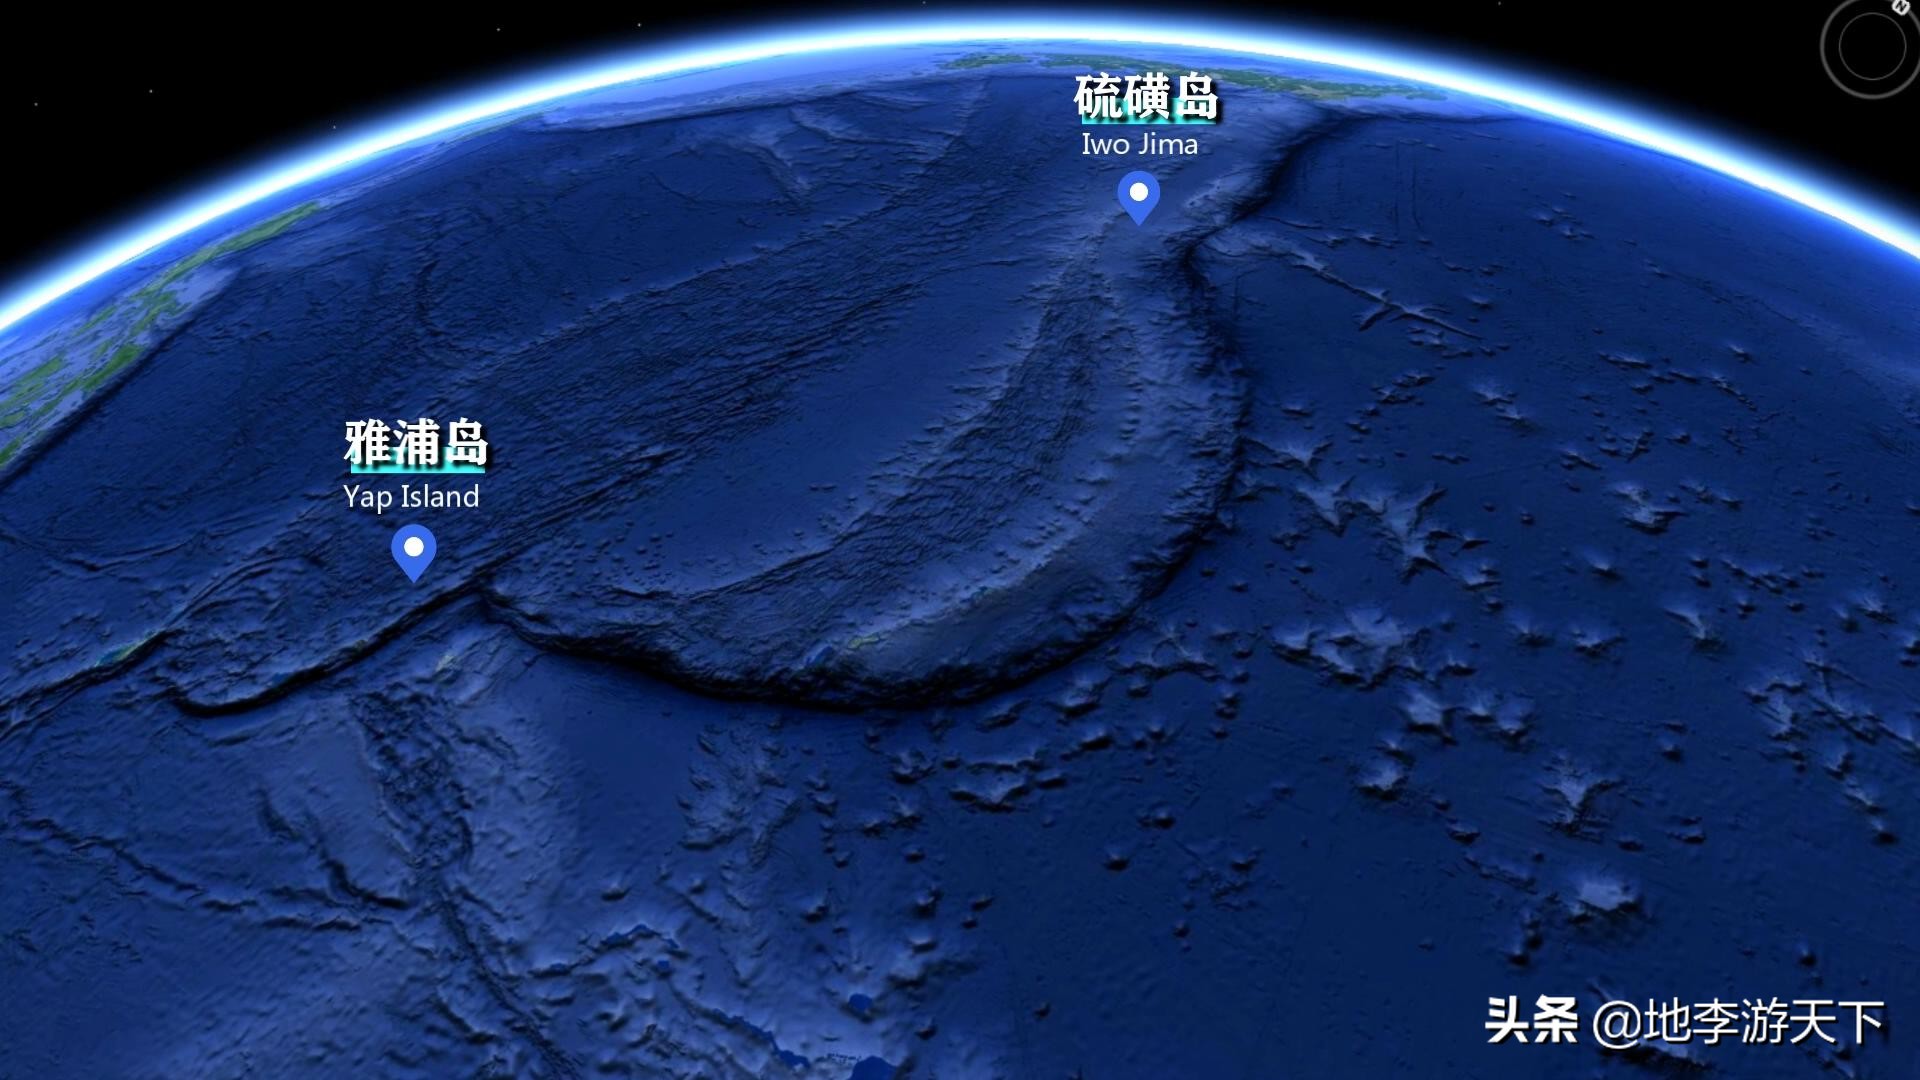 世界上最深的海沟是太平洋吗_一文解答